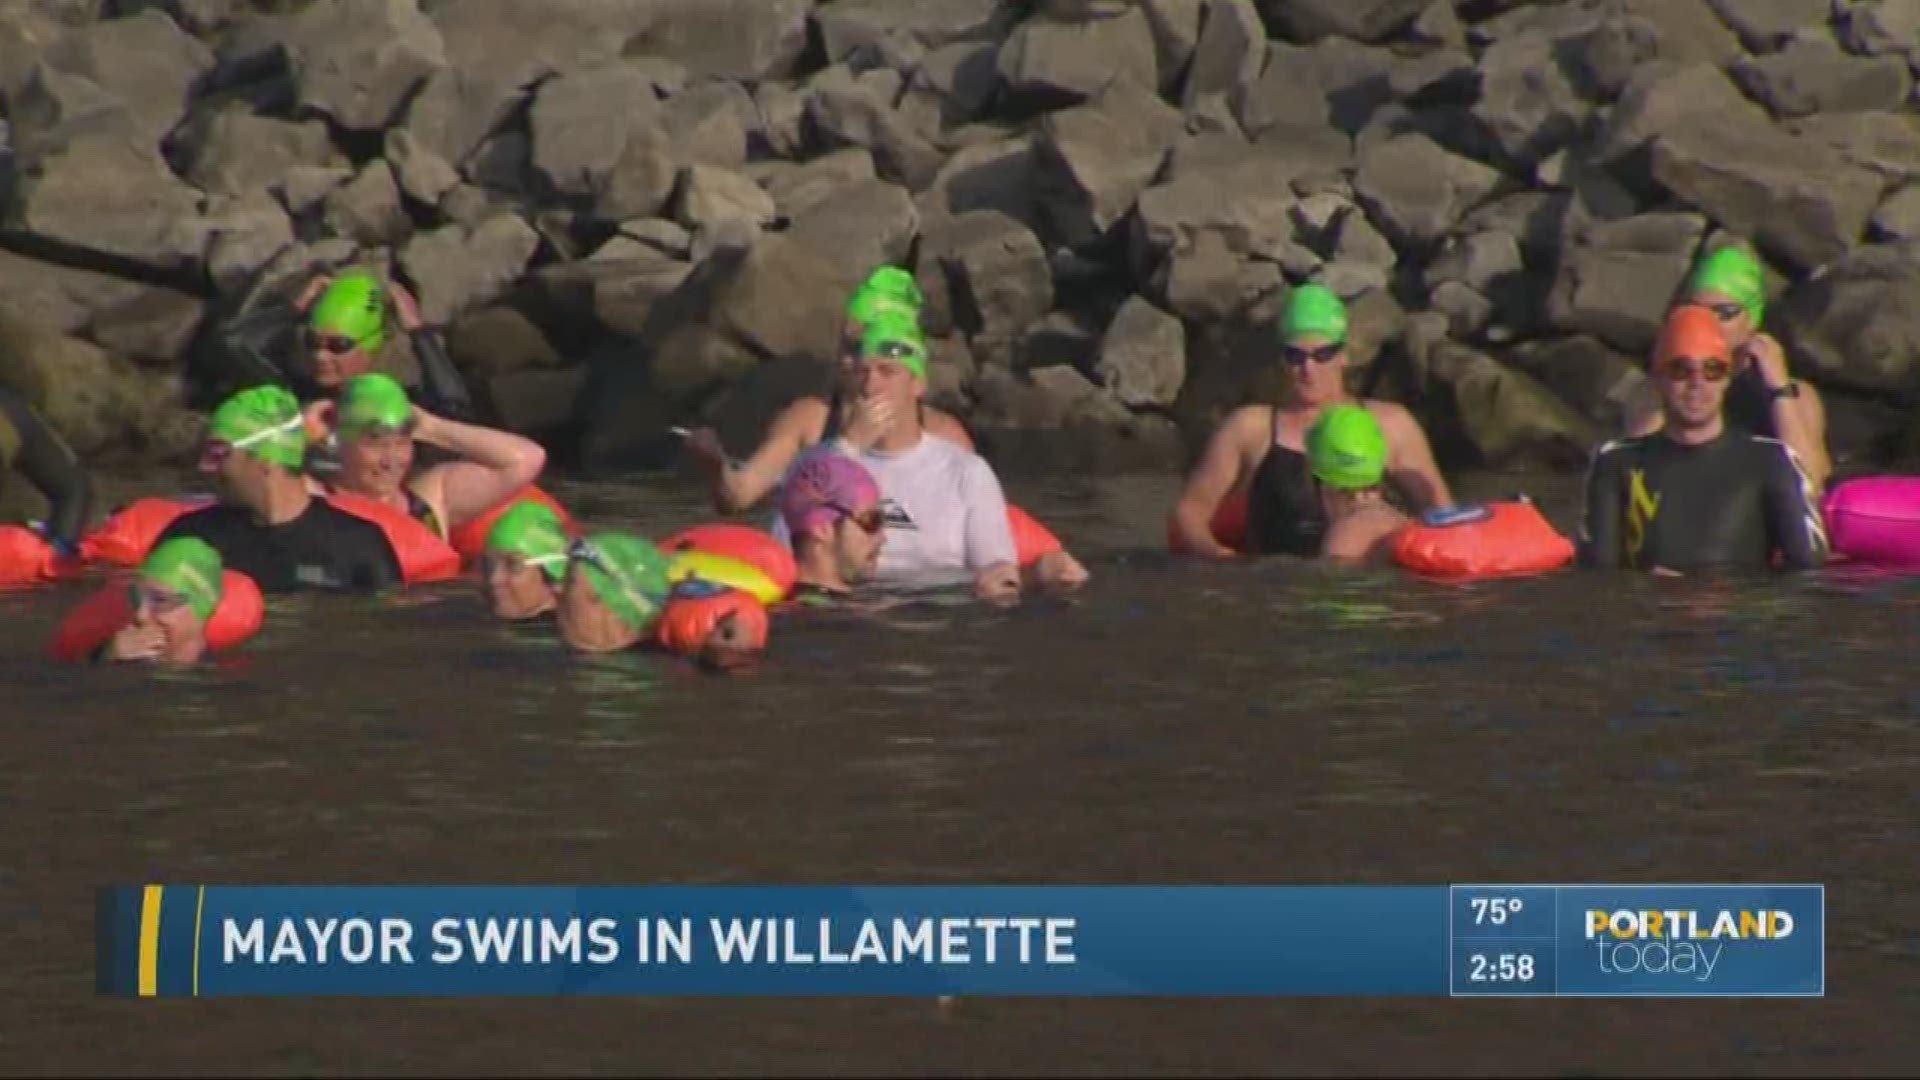 Mayor swims in Willamette